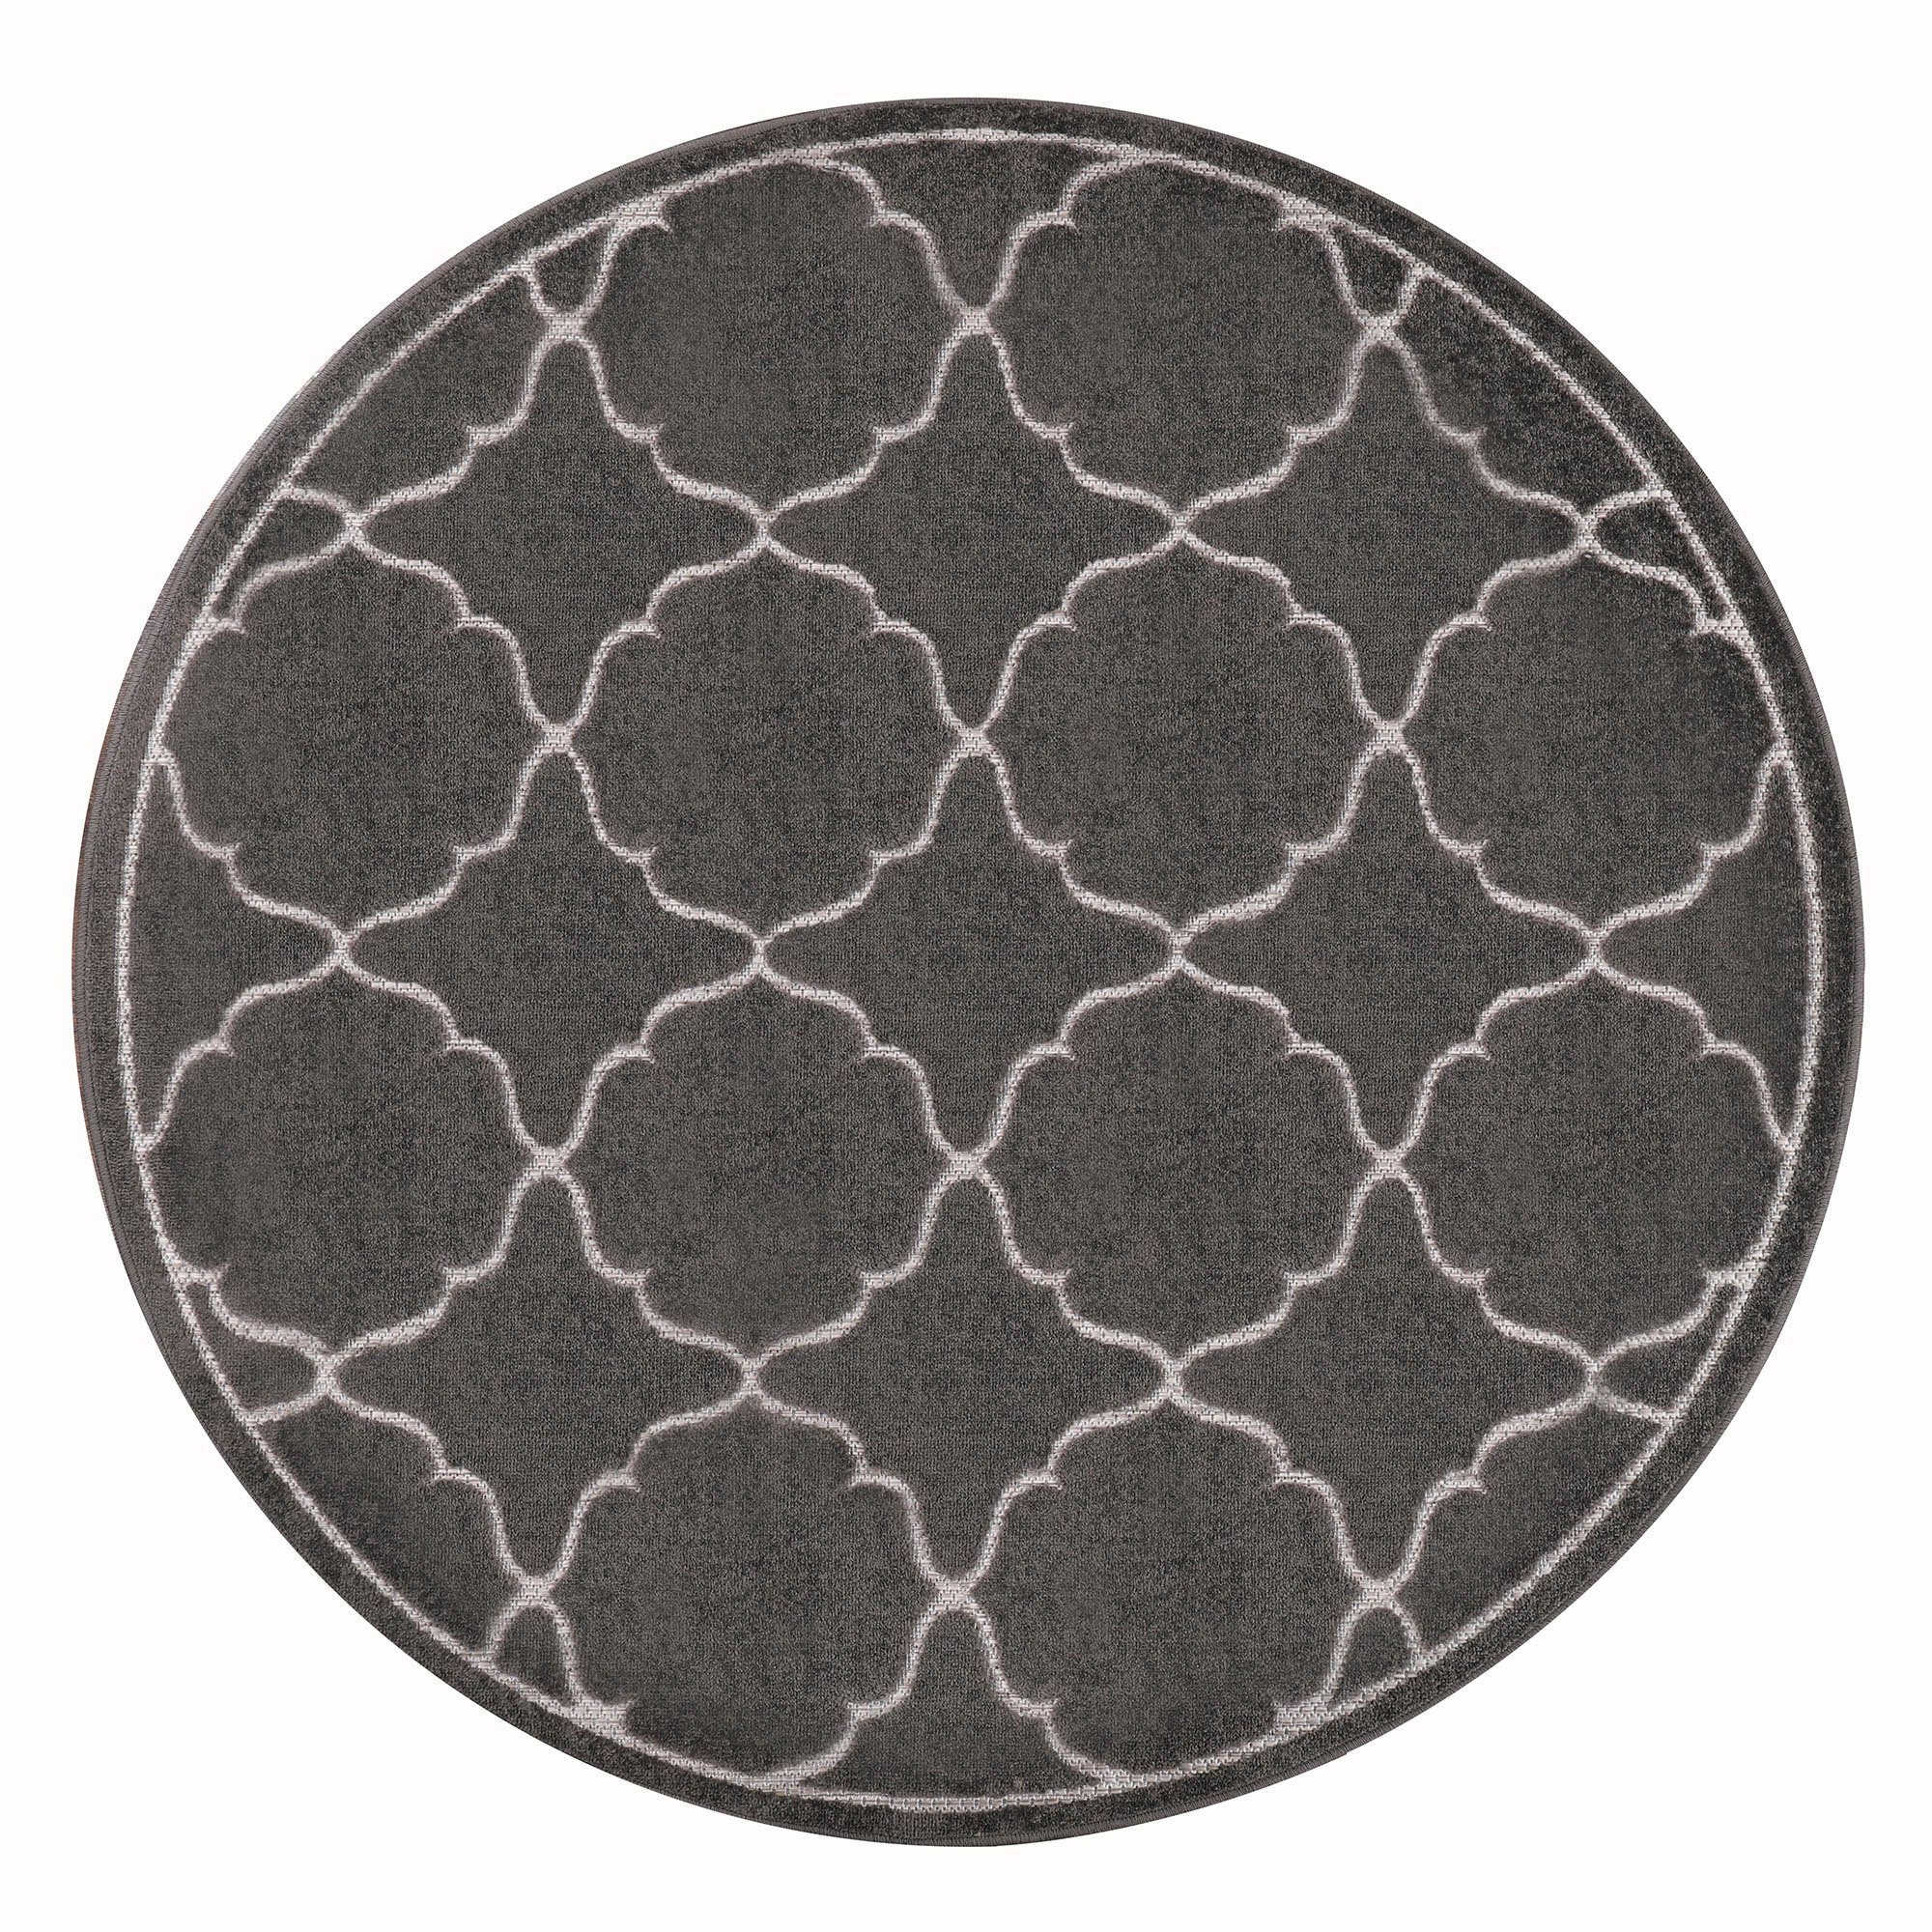 Teppich Berlin, Sanat, rund, Höhe: 6 mm, In -und Outdoor geeignet, robust und pflegeleicht grau